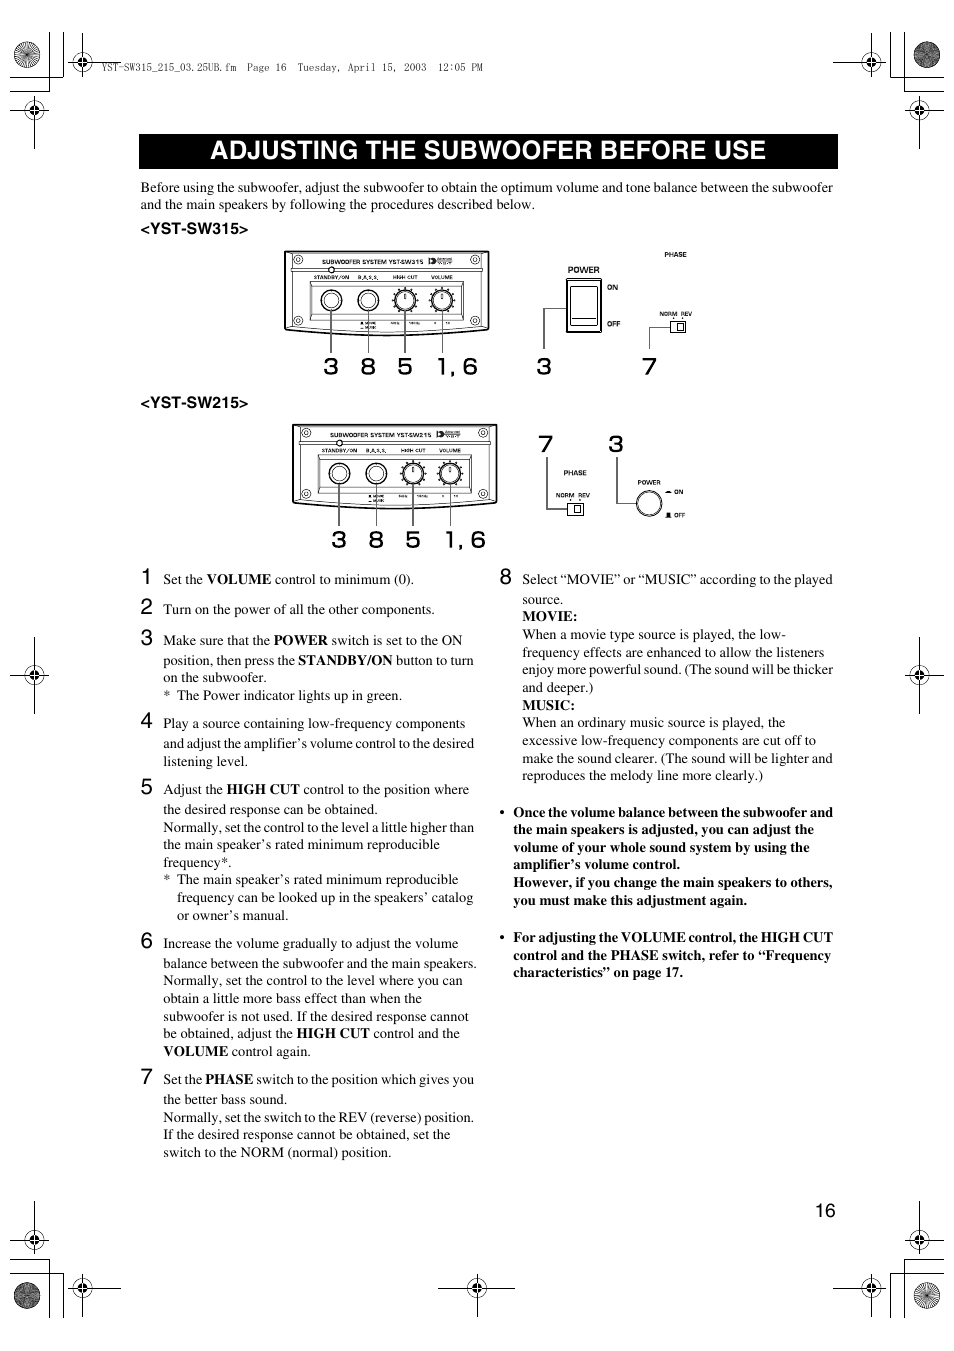 Adjusting the subwoofer before use | Yamaha HTR-5940 AV User Manual